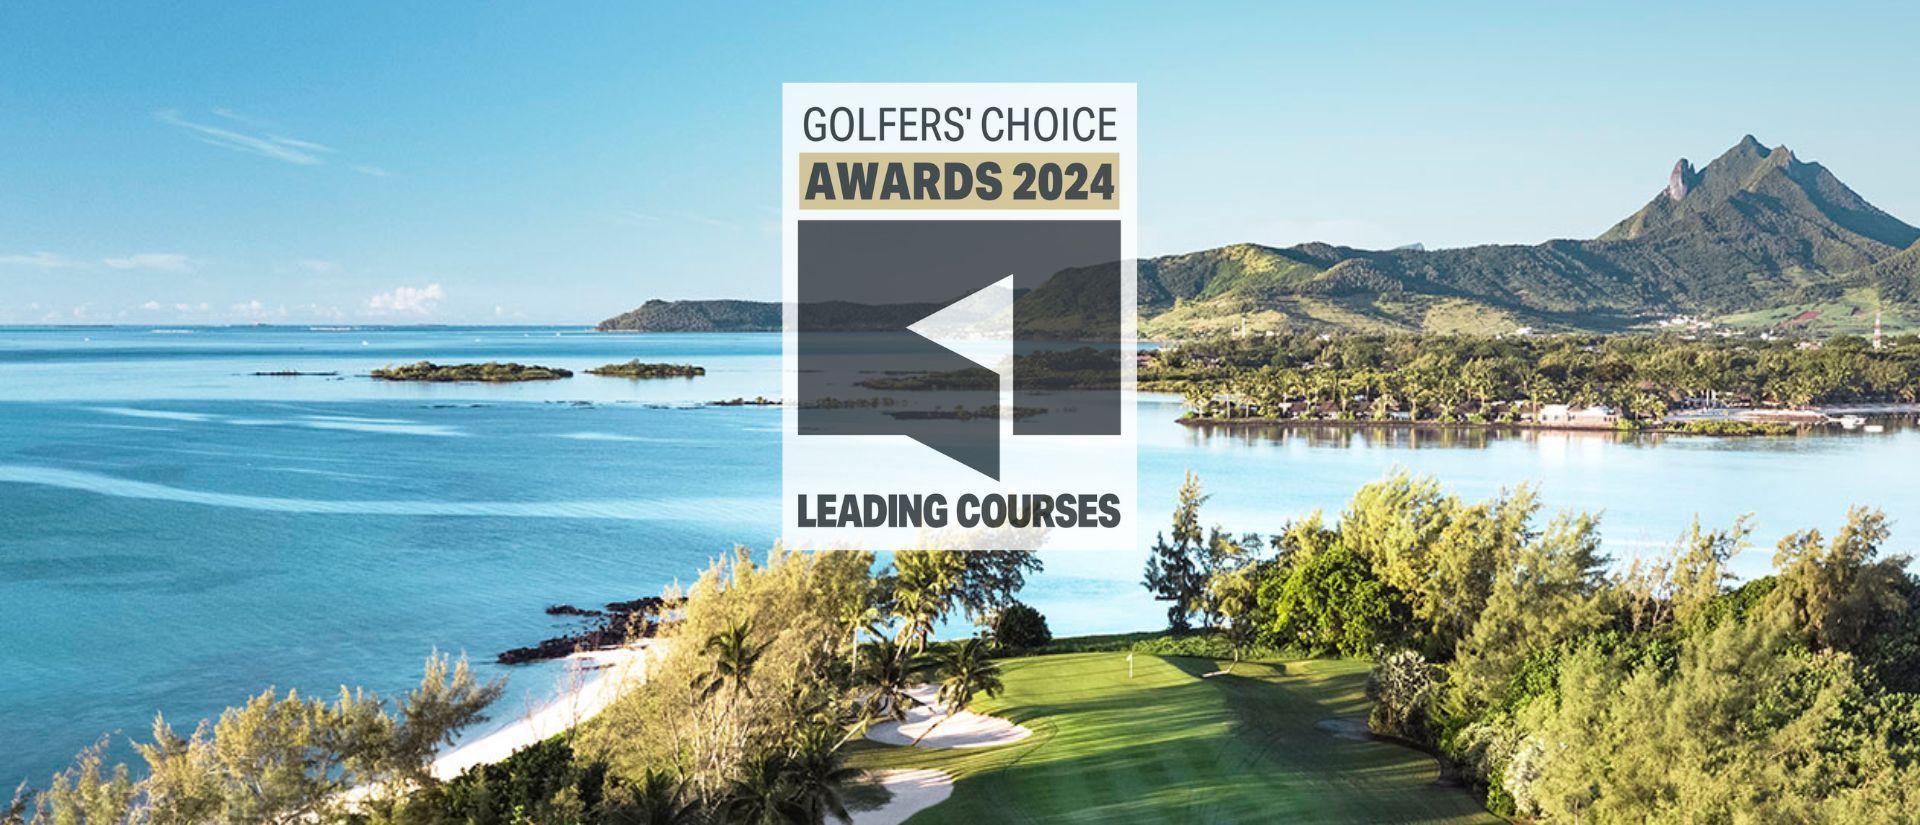 Leading Courses kronen ook buitenlandse golfclubs - Blog